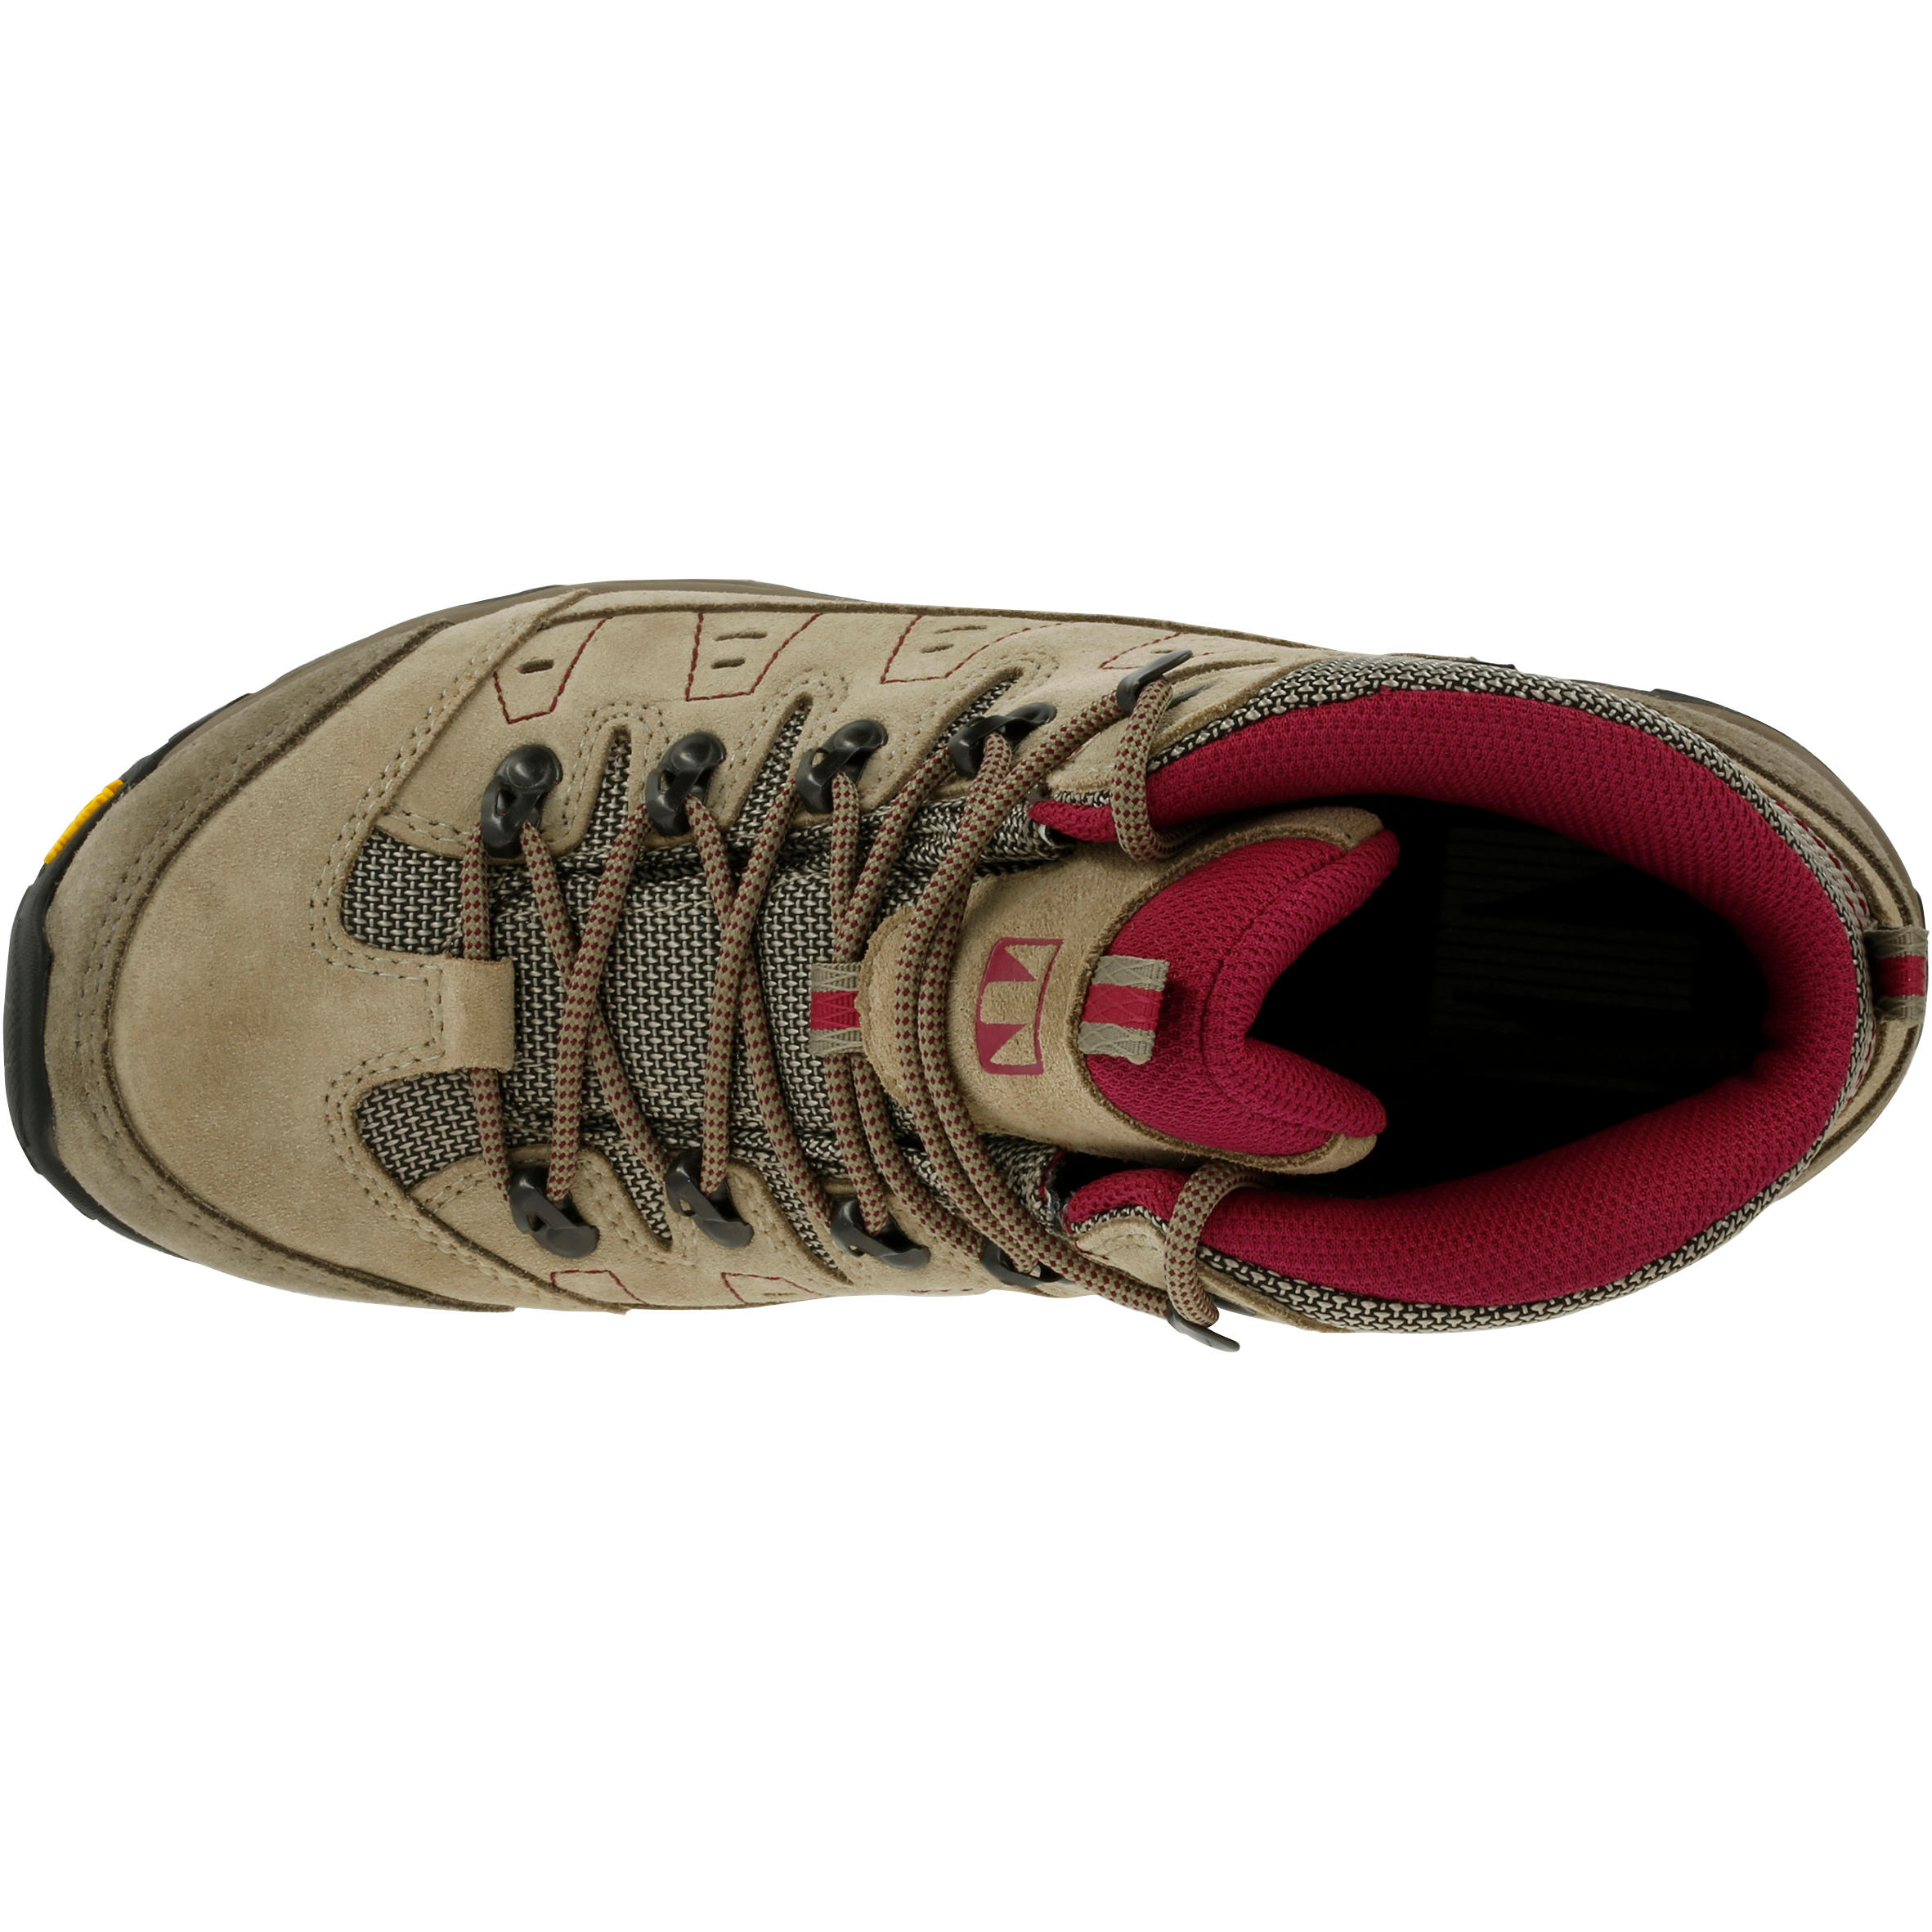 Waterproof Trekking Shoes - GORETEX - VIBRAM-TECNICA STARCROSS - W Beige 6/13